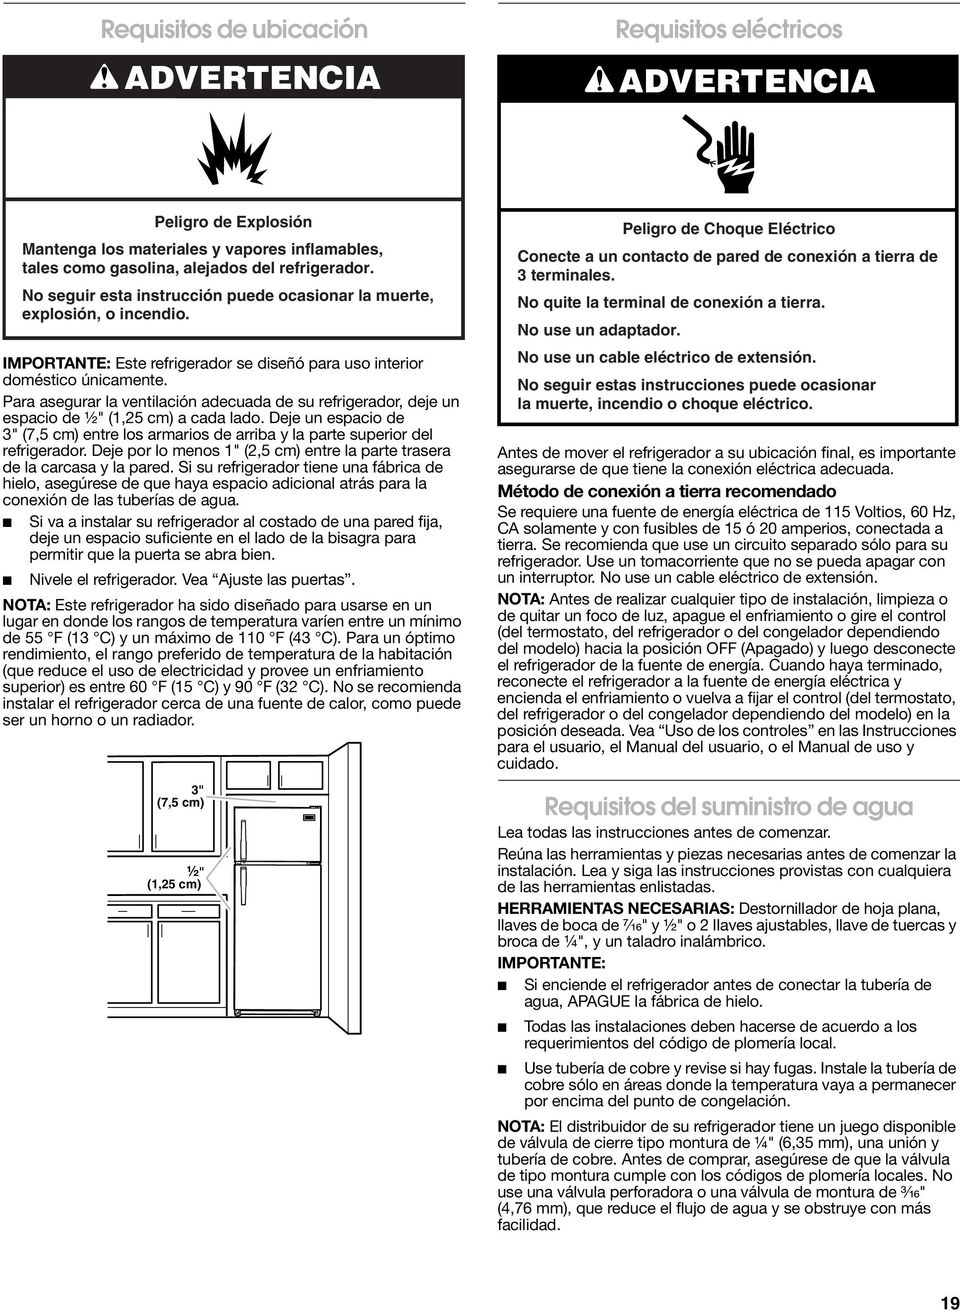 rv requisitos de conexion de un refrigerador